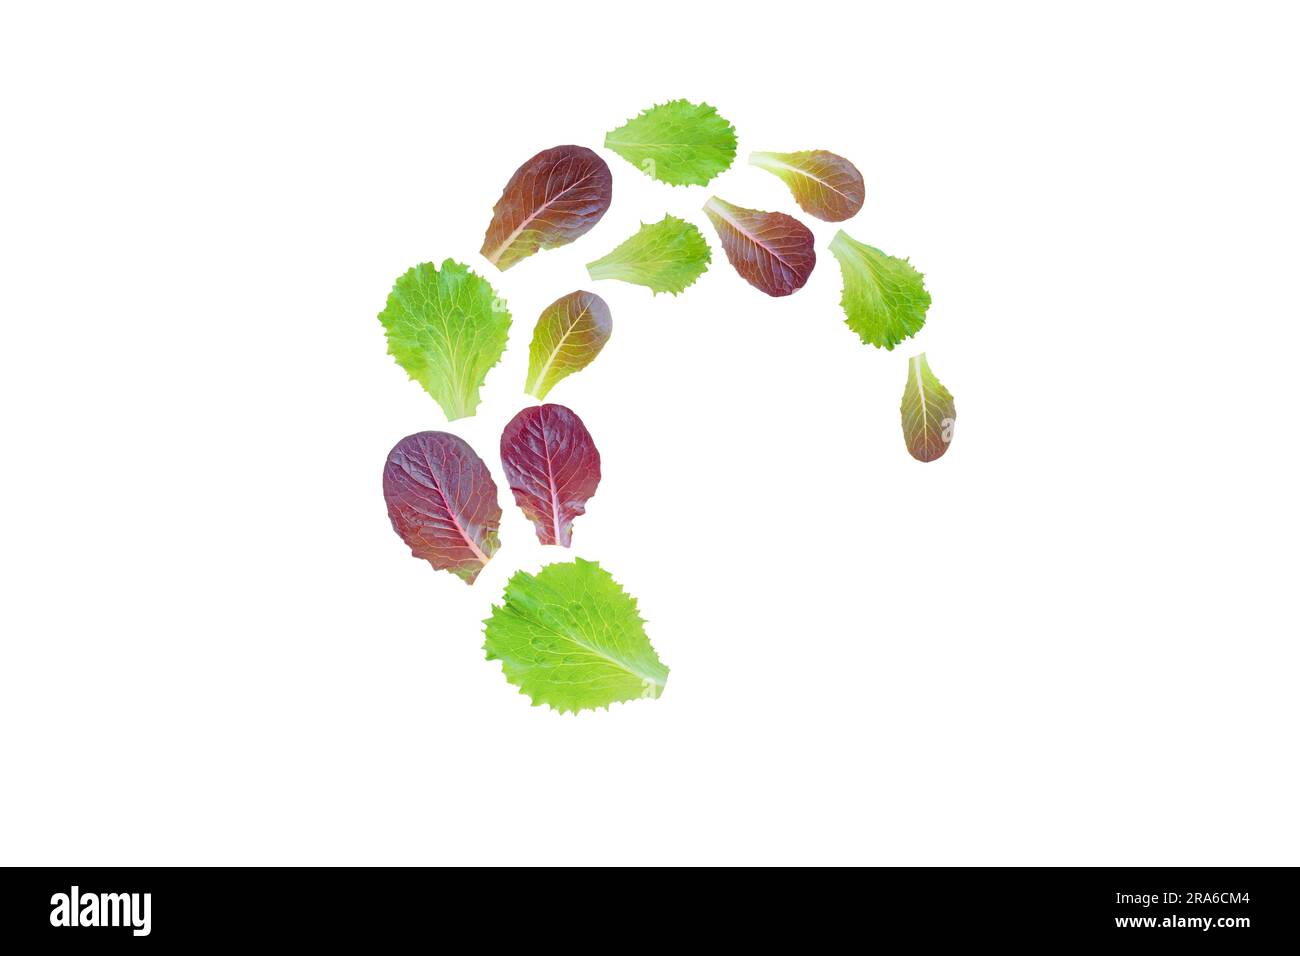 Spiralförmig fliegender Haufen Salat violett und grüne Blätter, isoliert auf weiß Stockfoto